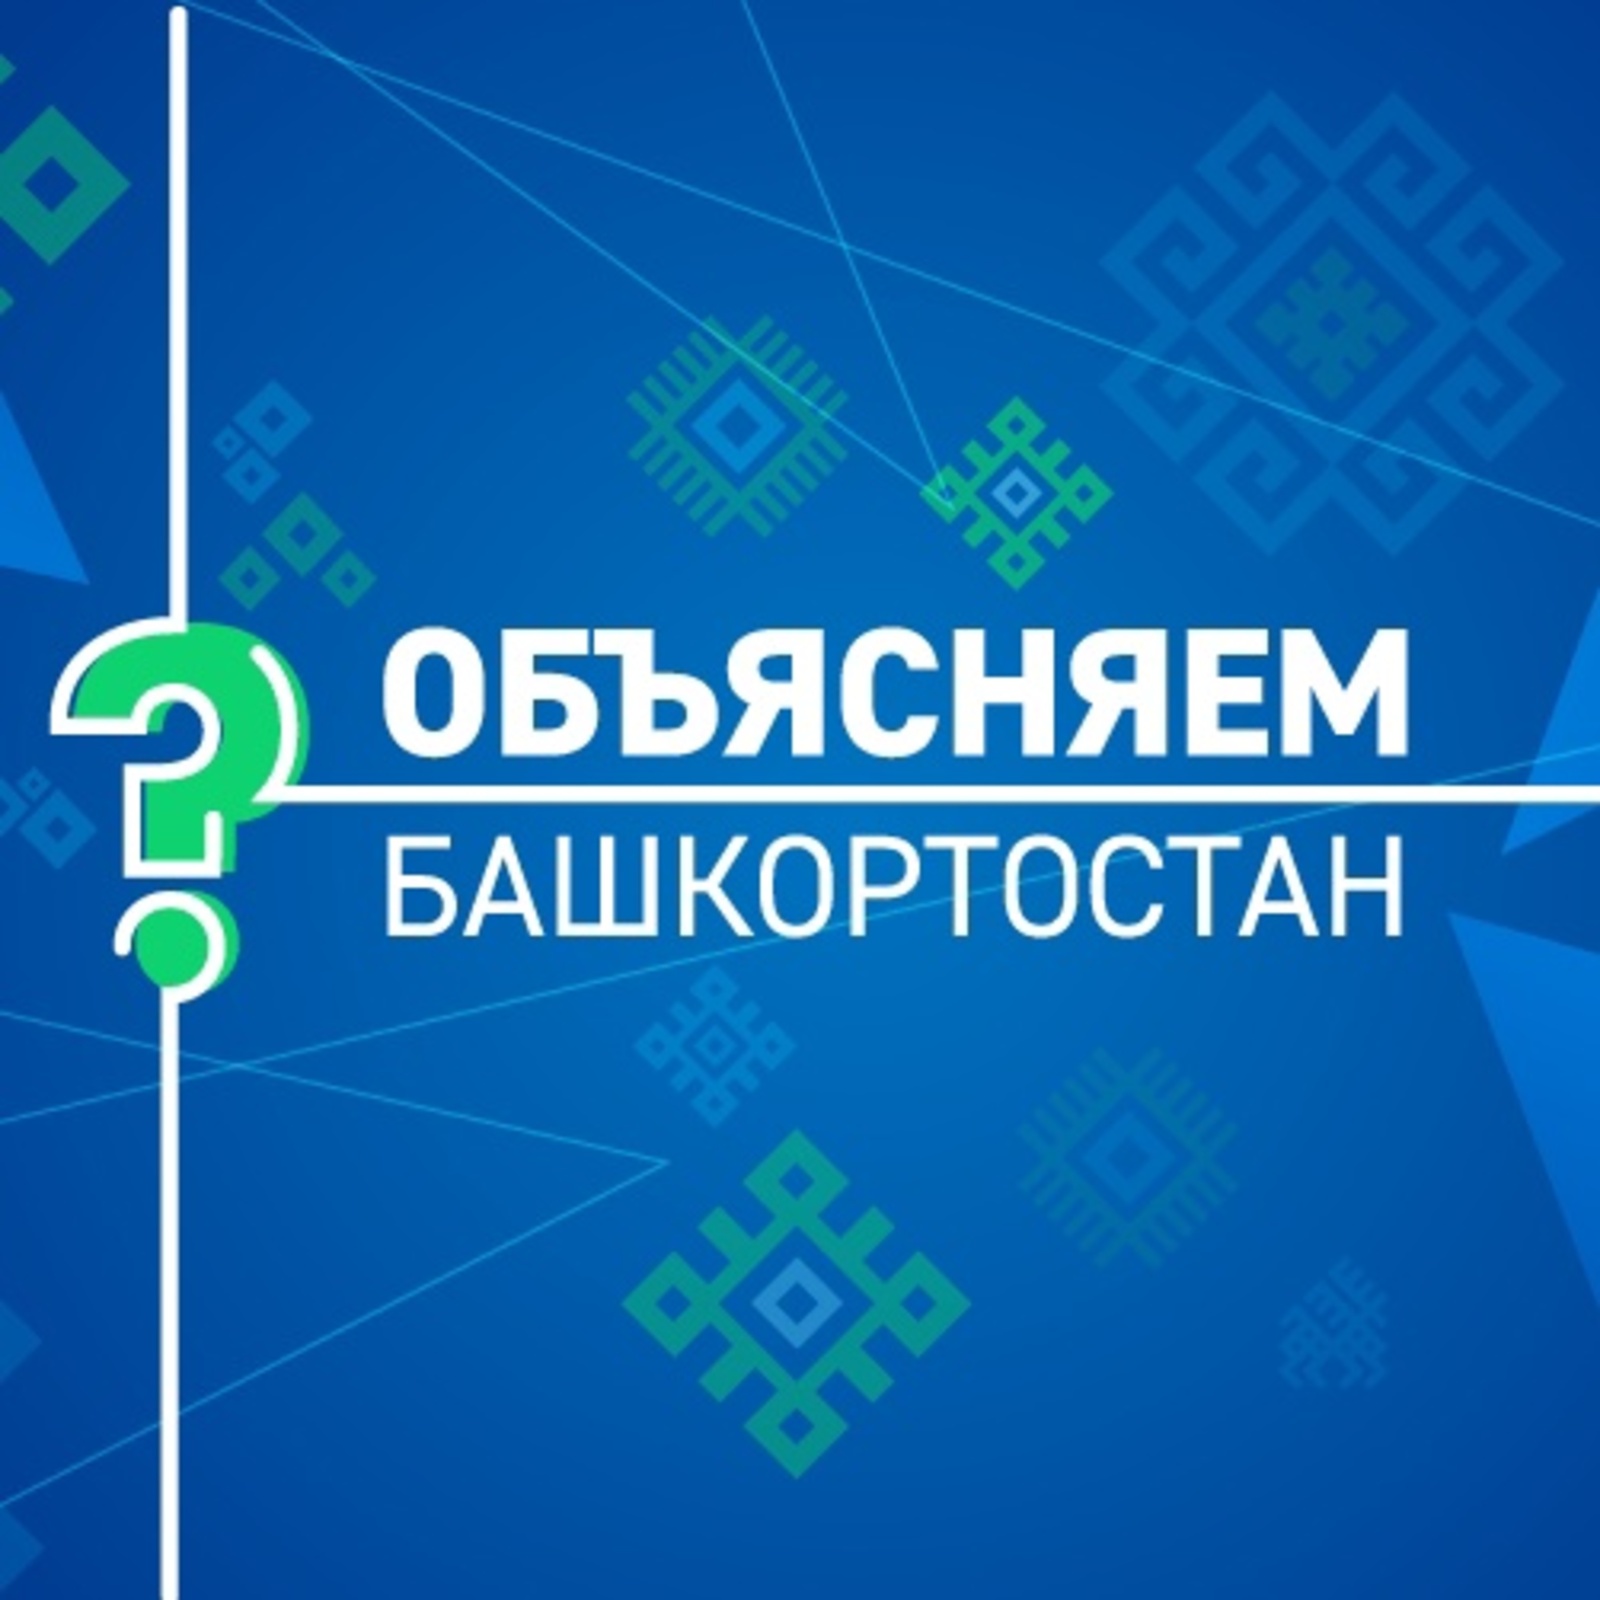 В Башкирии дети могут пройти онлайн-уроки Банка России по финансовой грамотности